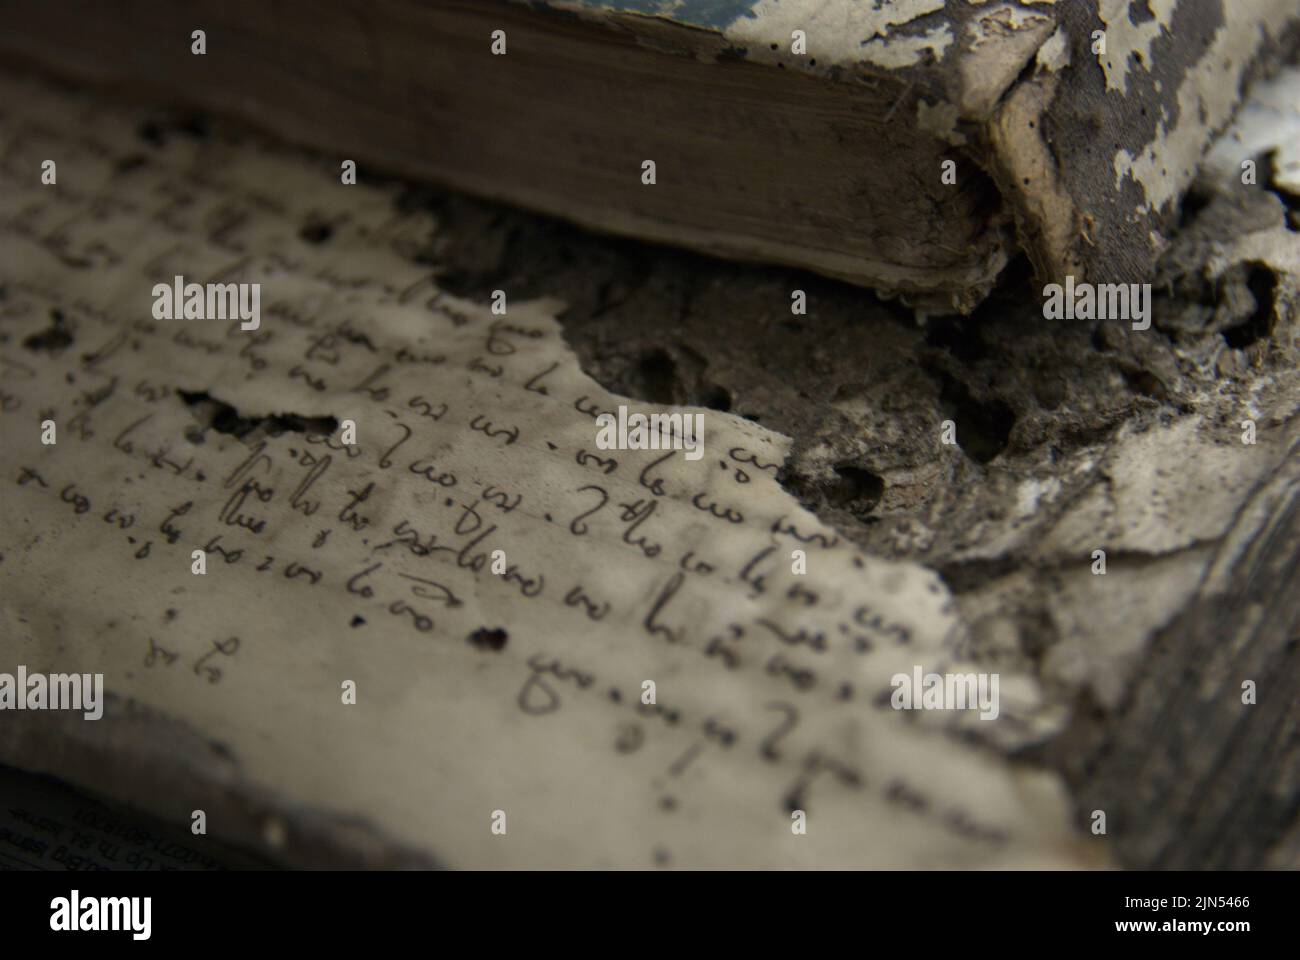 Se está reconstruyendo un libro escrito en letras antiguas en la Biblioteca Nacional de Yakarta, Indonesia. Foto de stock